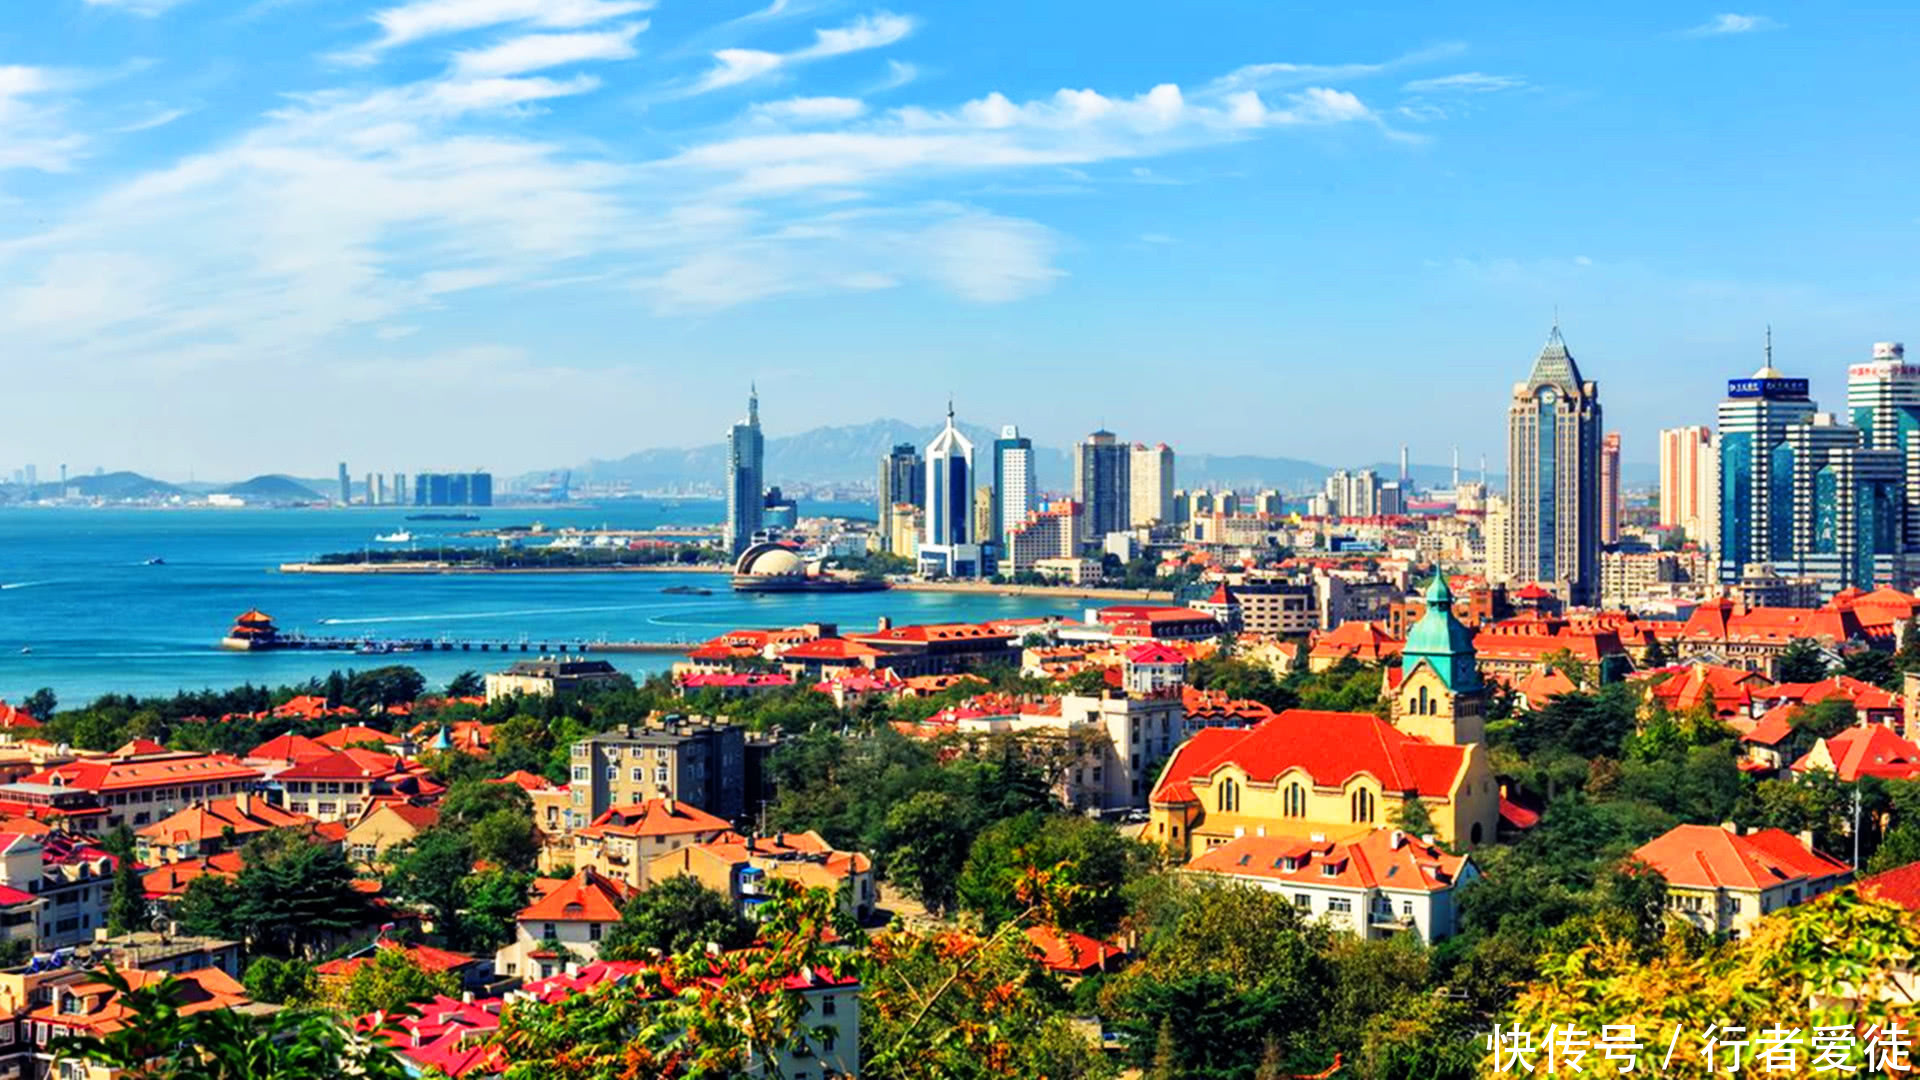 山东最富裕的城市,有望超过爱沙尼亚,让斯洛伐